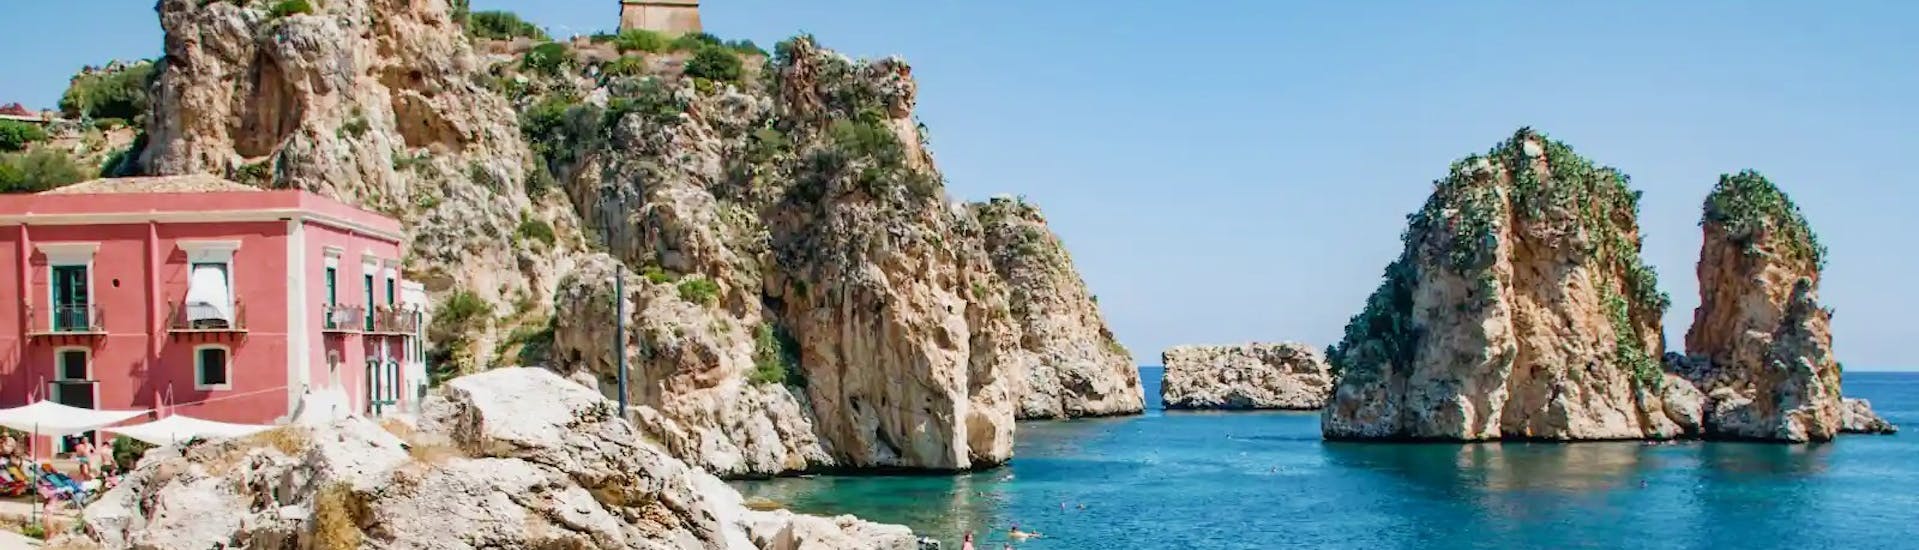 Photo de Scopello, le magnifique rivage sicilien que vous pouvez explorer avec une location de bateau à San Vito Lo Capo (jusqu'à 6 personnes) avec Marina Yachting Sicily San Vito Lo Capo.